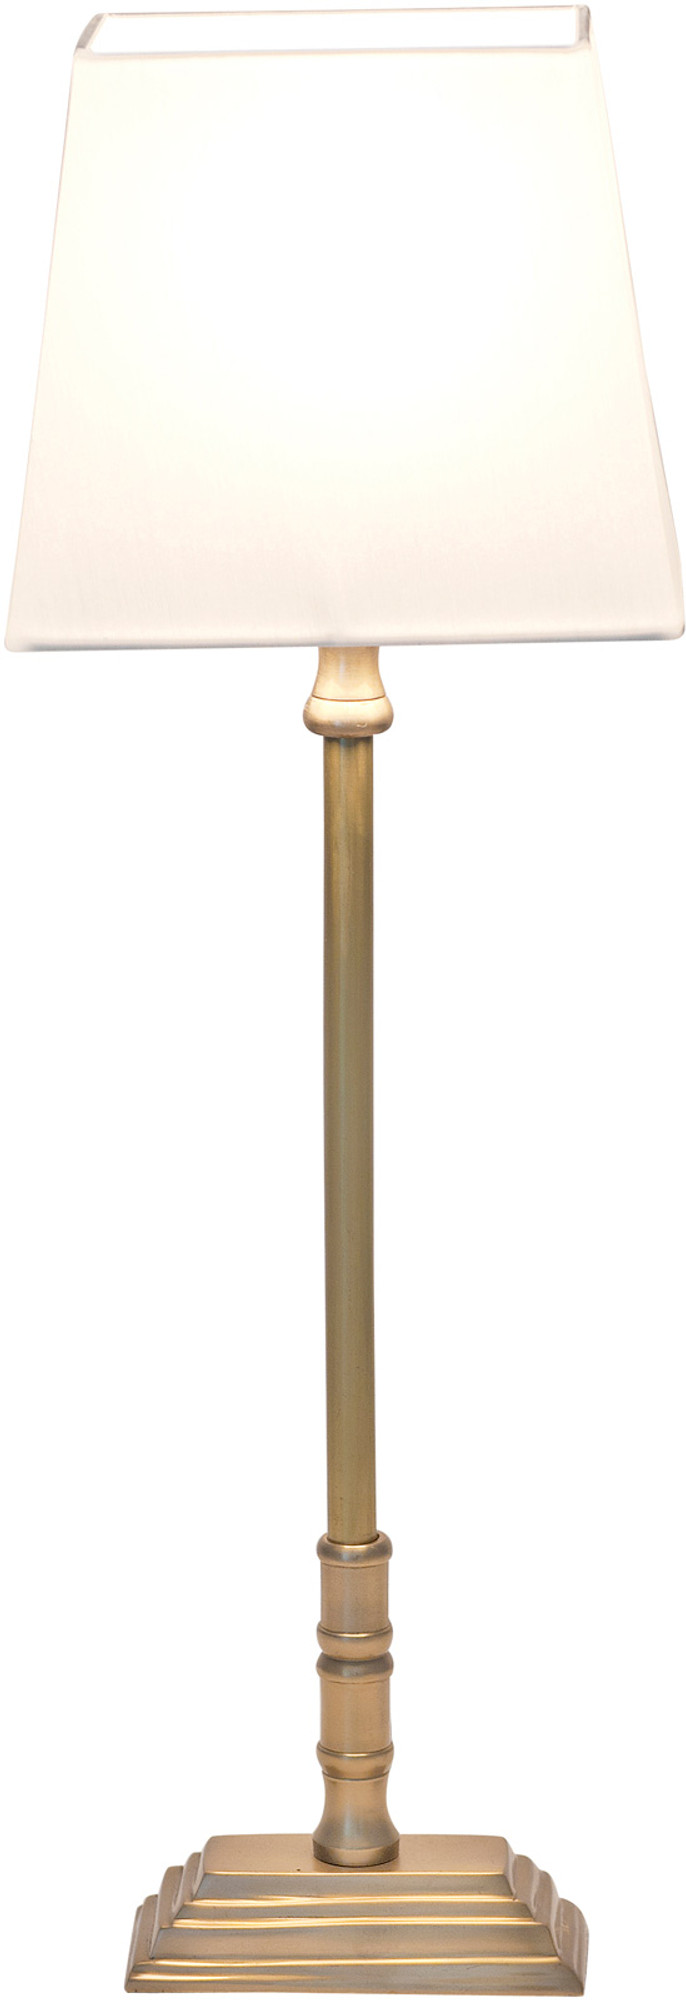 Tischlampe Holländer New York Tower 026 K 1221 M